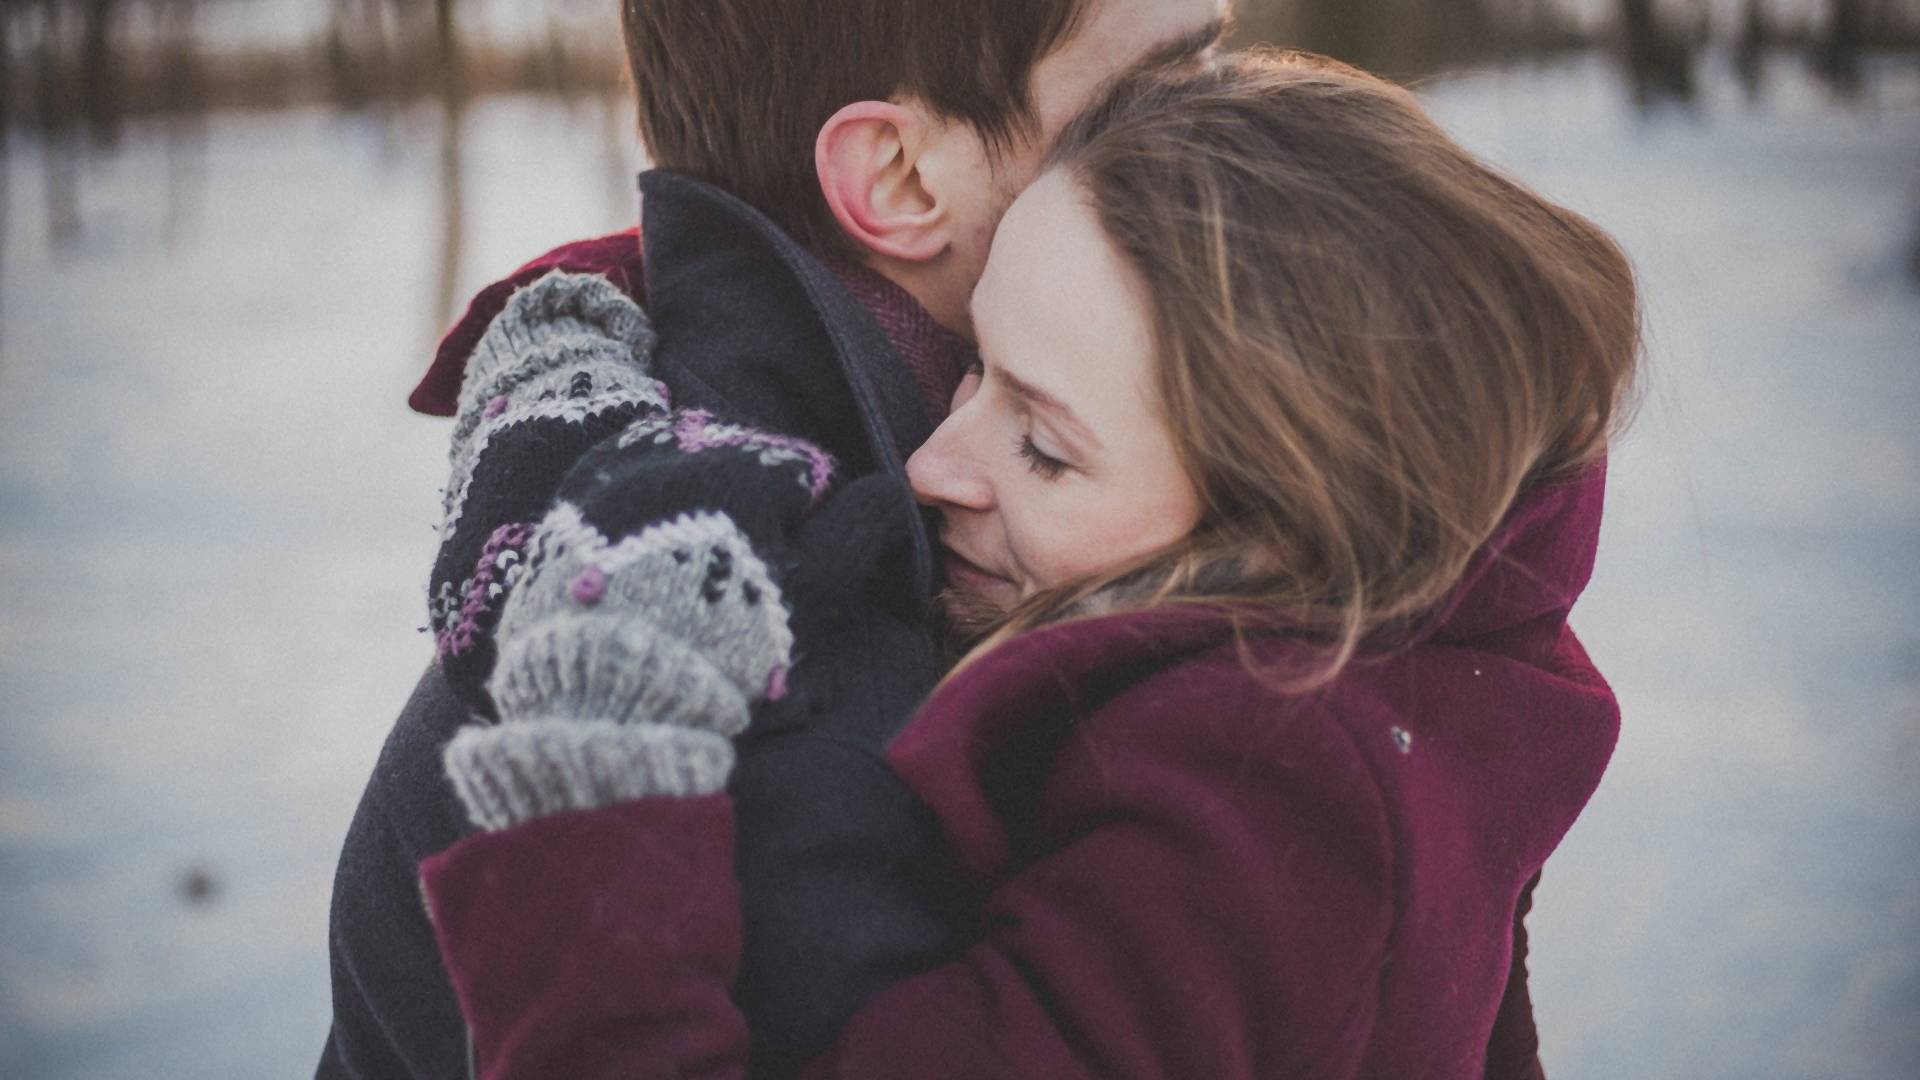 Siedem powodów, dla których warto codziennie przytulać swojego partnera